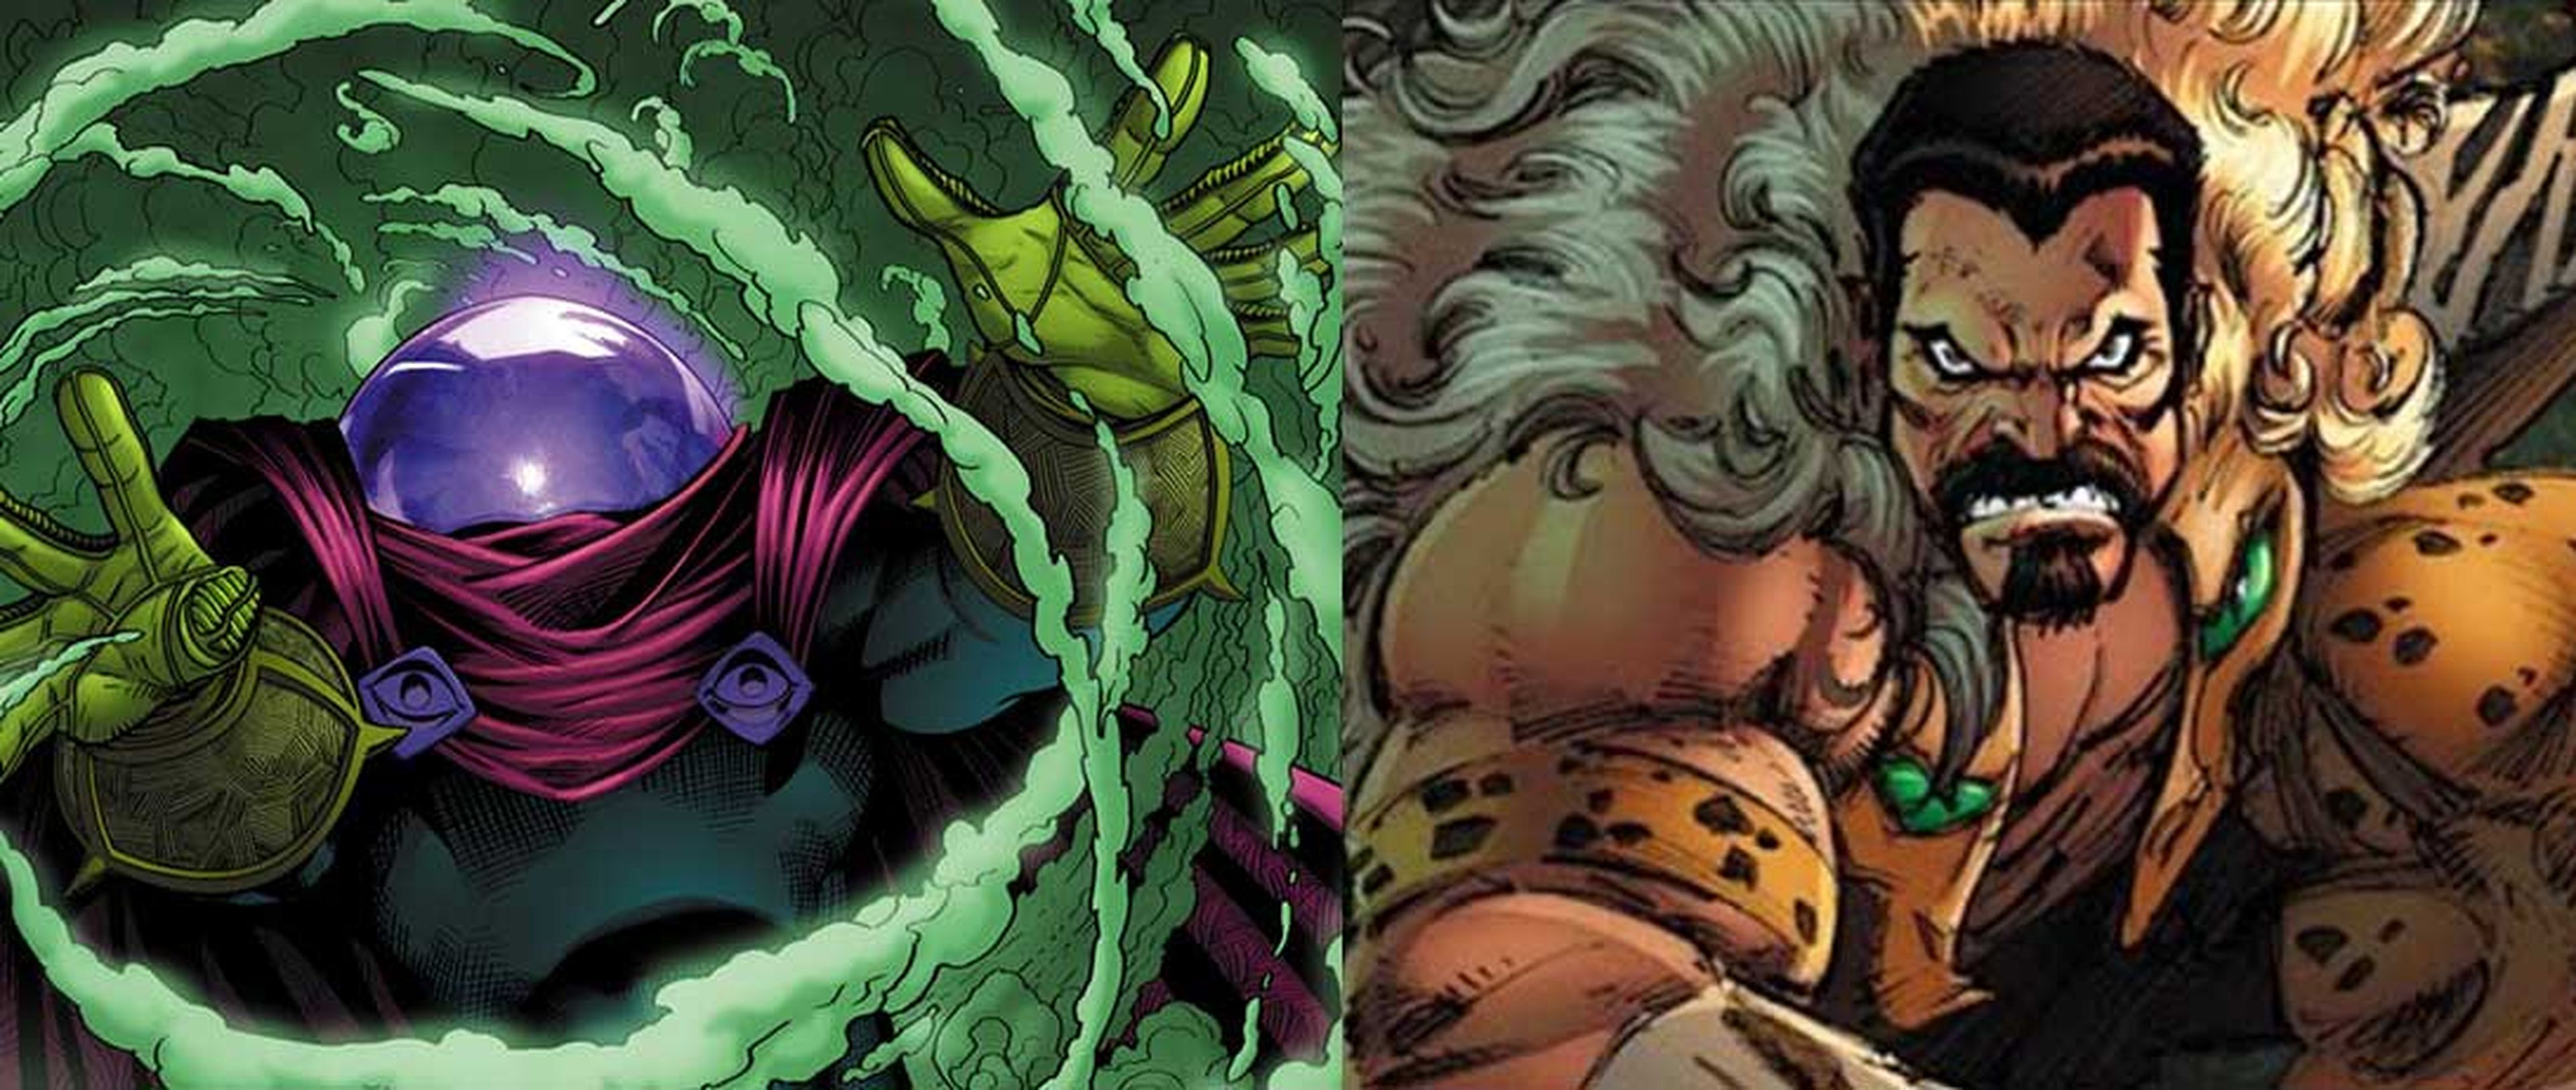 Mysterio y Kraven el Cazador, posibles spin-off de Spider-Man